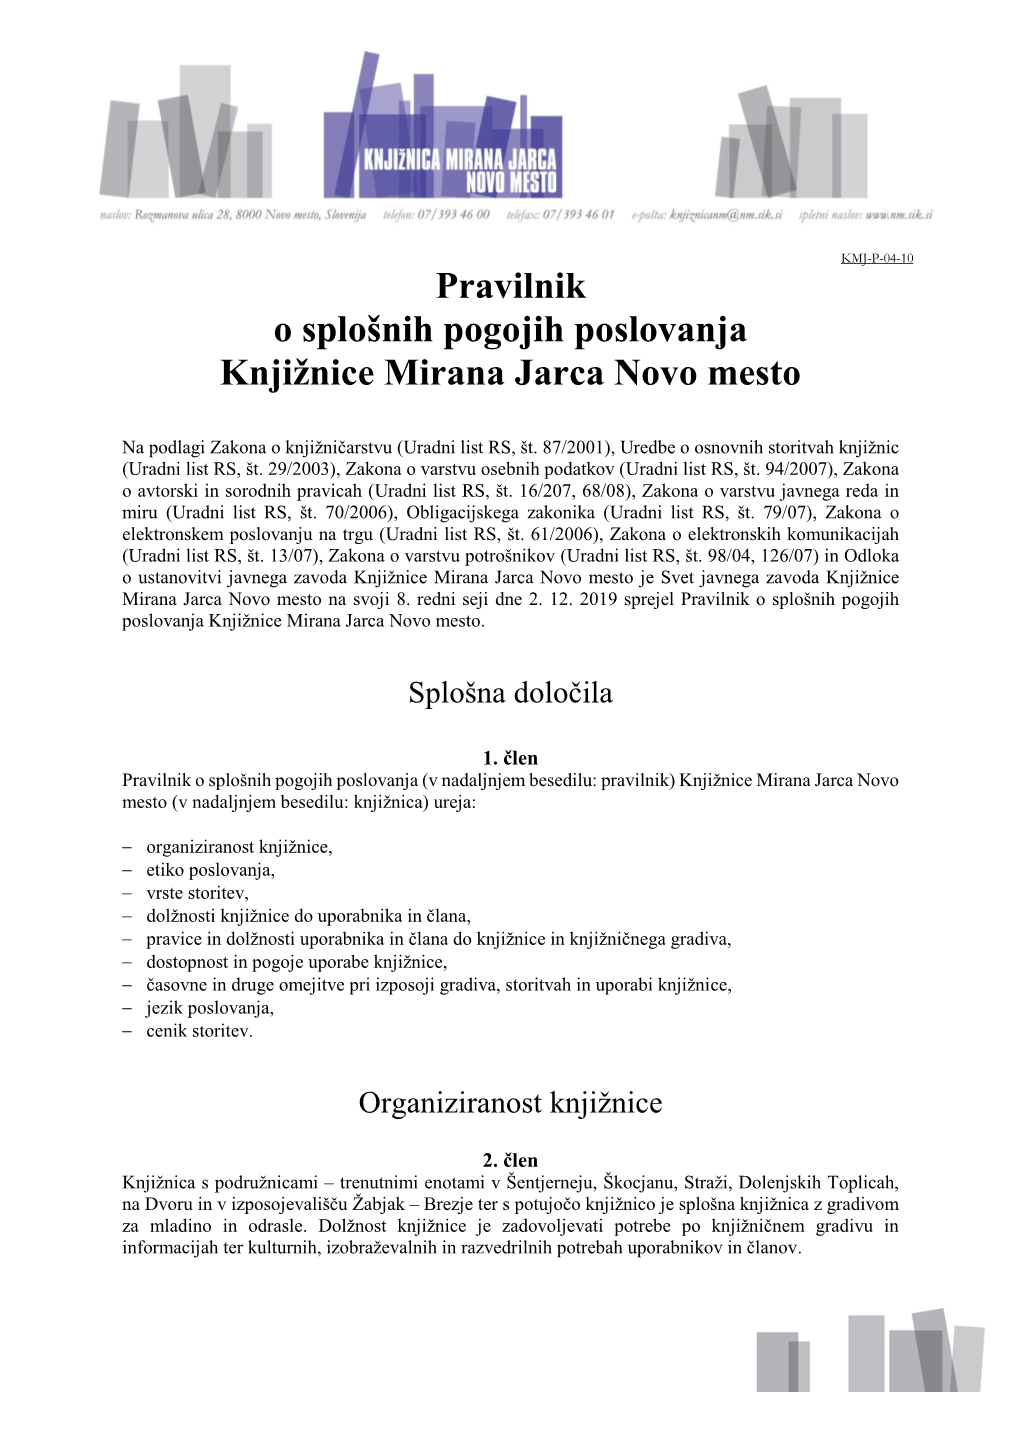 Pravilnik O Splošnih Pogojih Poslovanja Knjižnice Mirana Jarca Novo Mesto